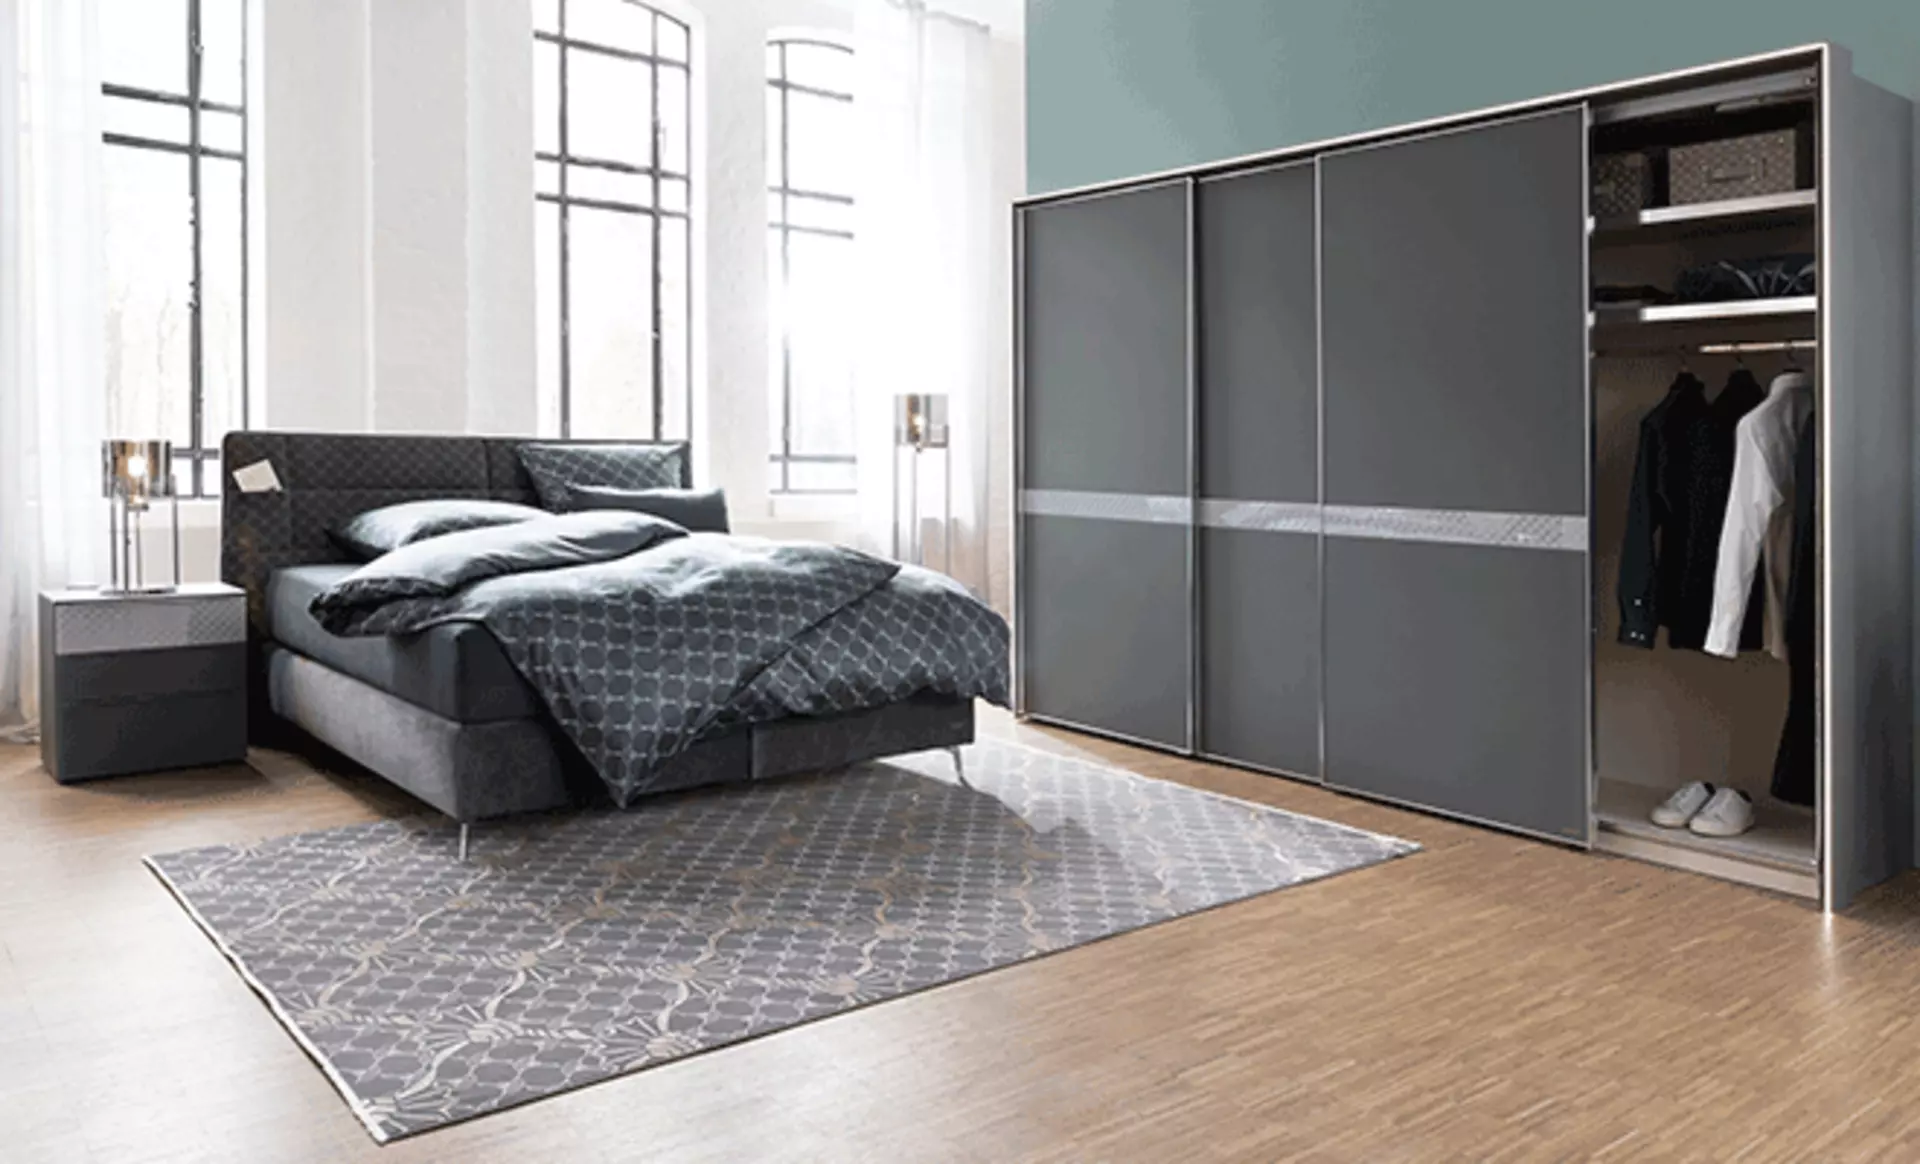 JOOP! Bedroom - elegante und funktionale Möbel für das Schlafzimmer von Joop bei Möbel Inhofer